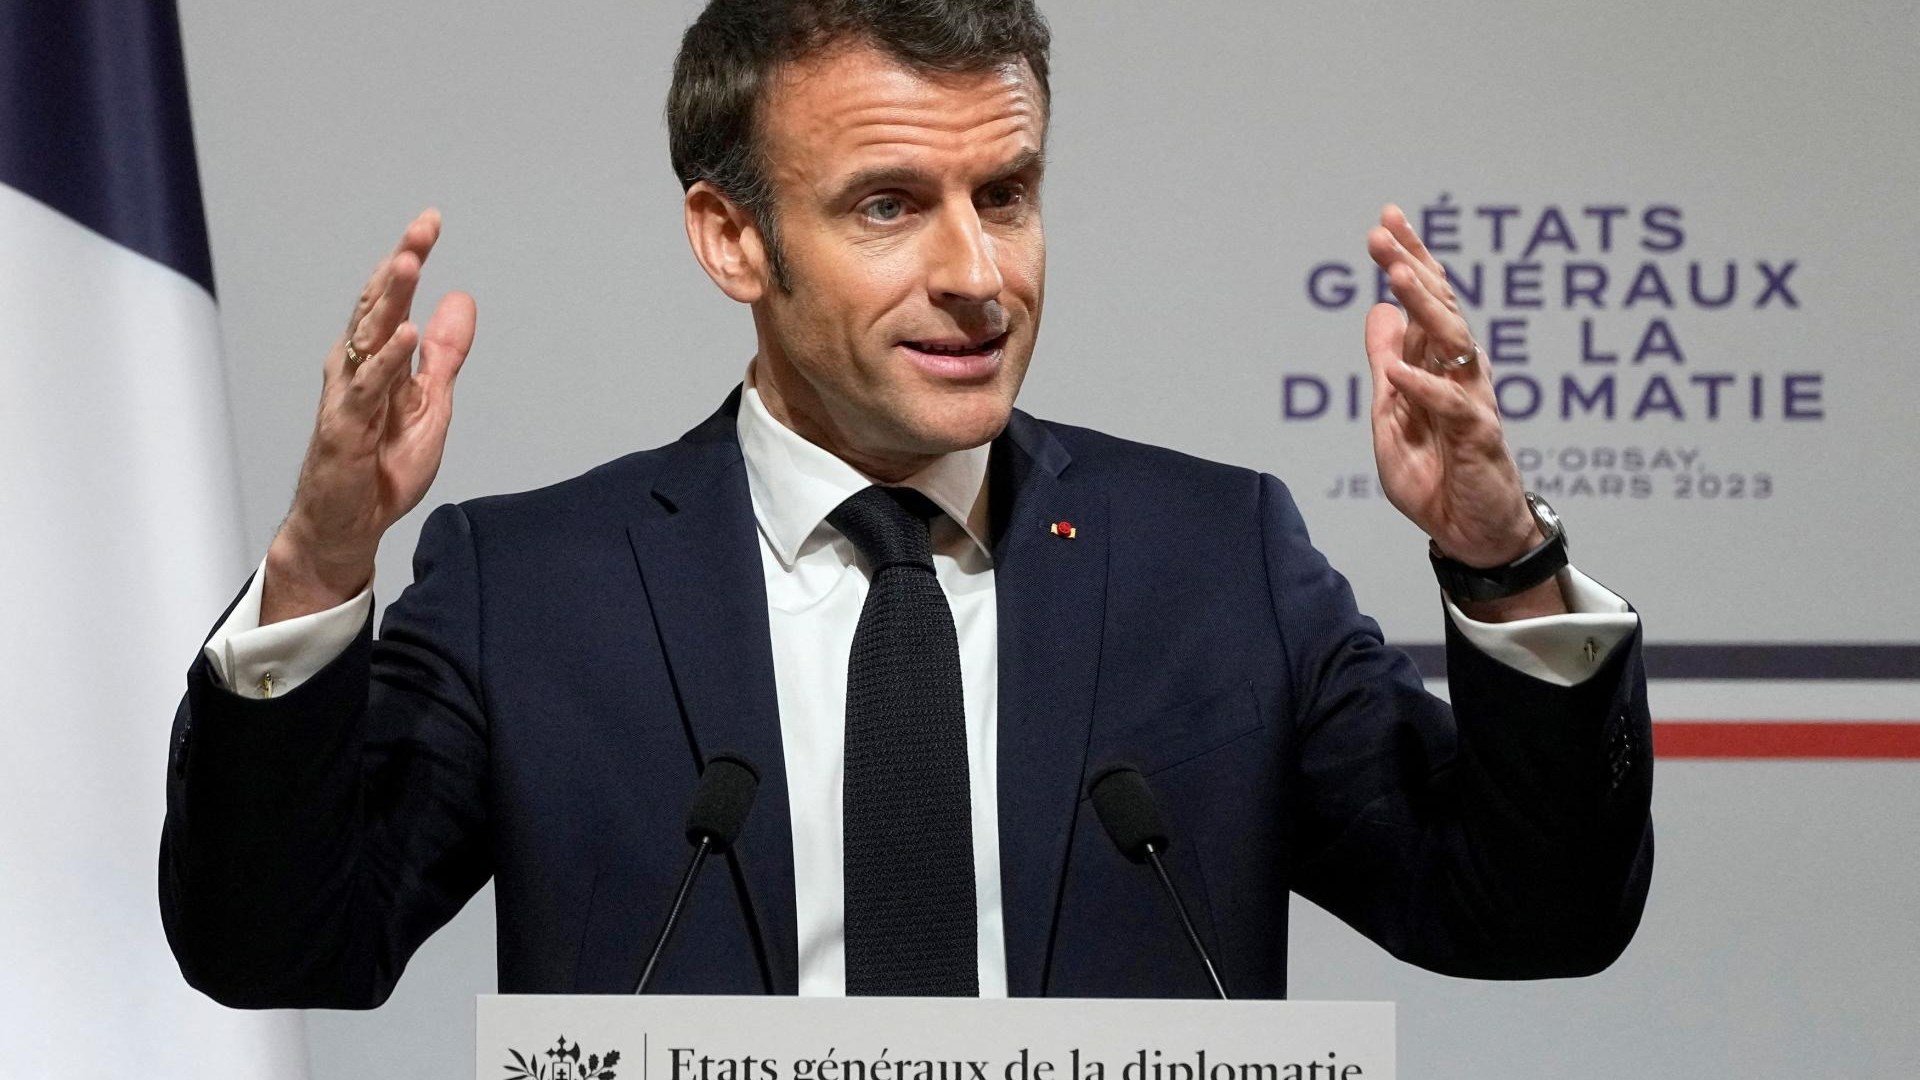 Le gouvernement français fait voter la réforme des retraites par le parlement